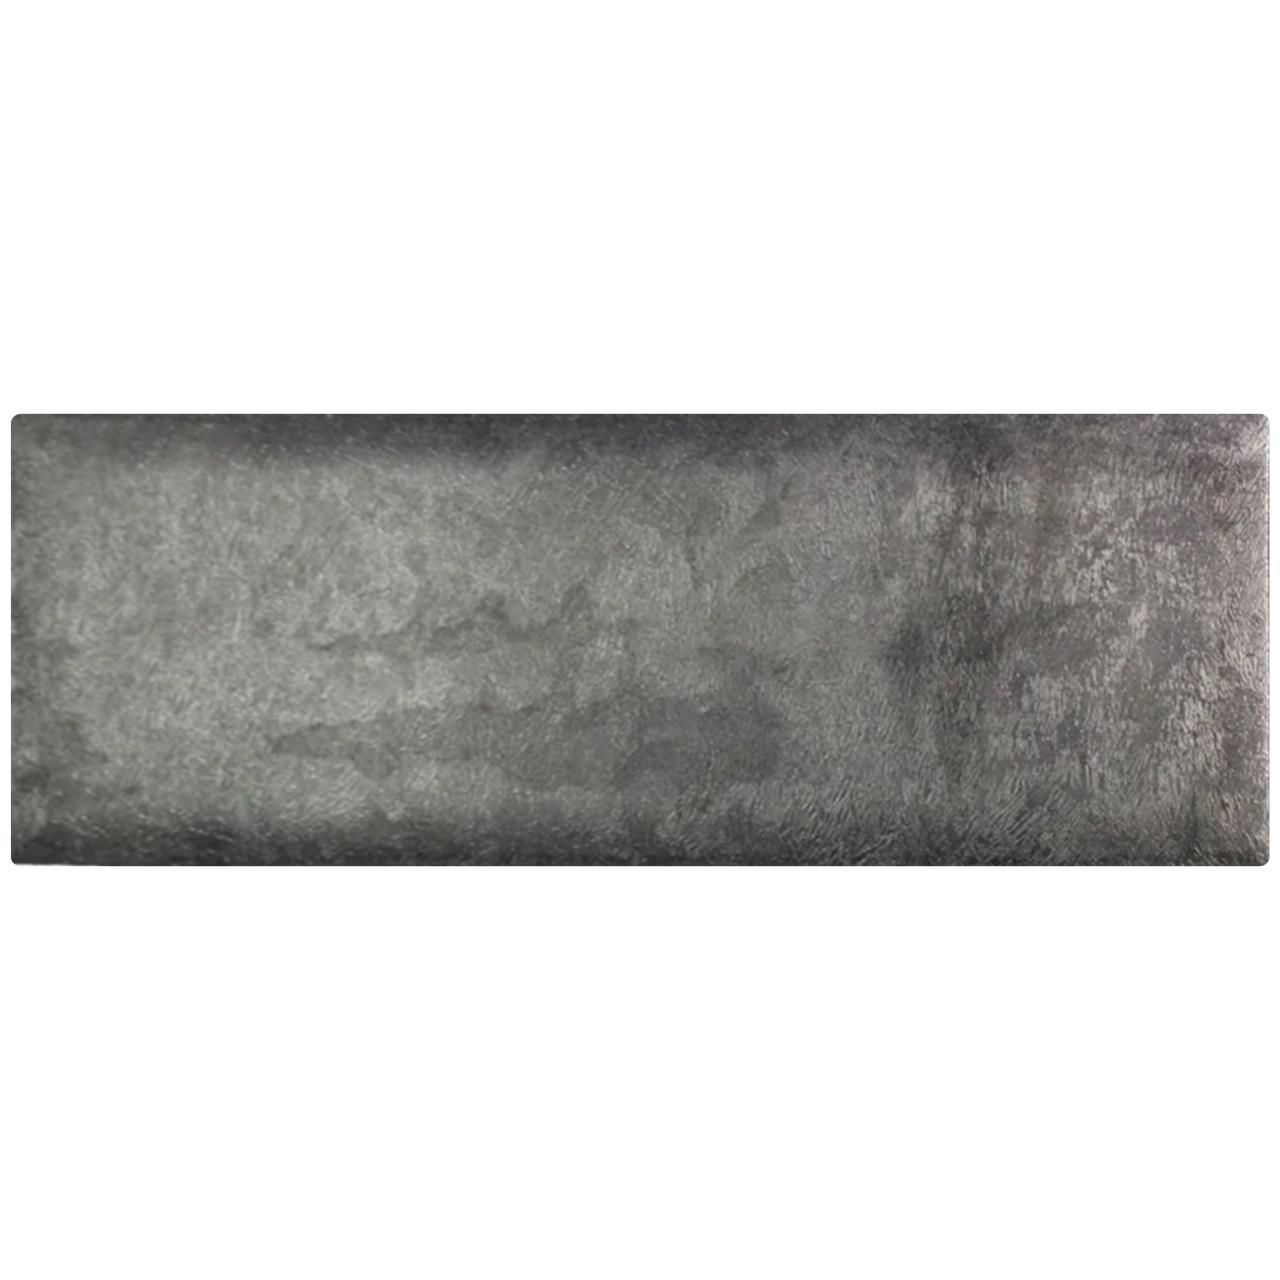 Потолочный керамический обогреватель Uden-S KEN-500D Изморозь жаккард графитовый (2734KM5dGAiz823)